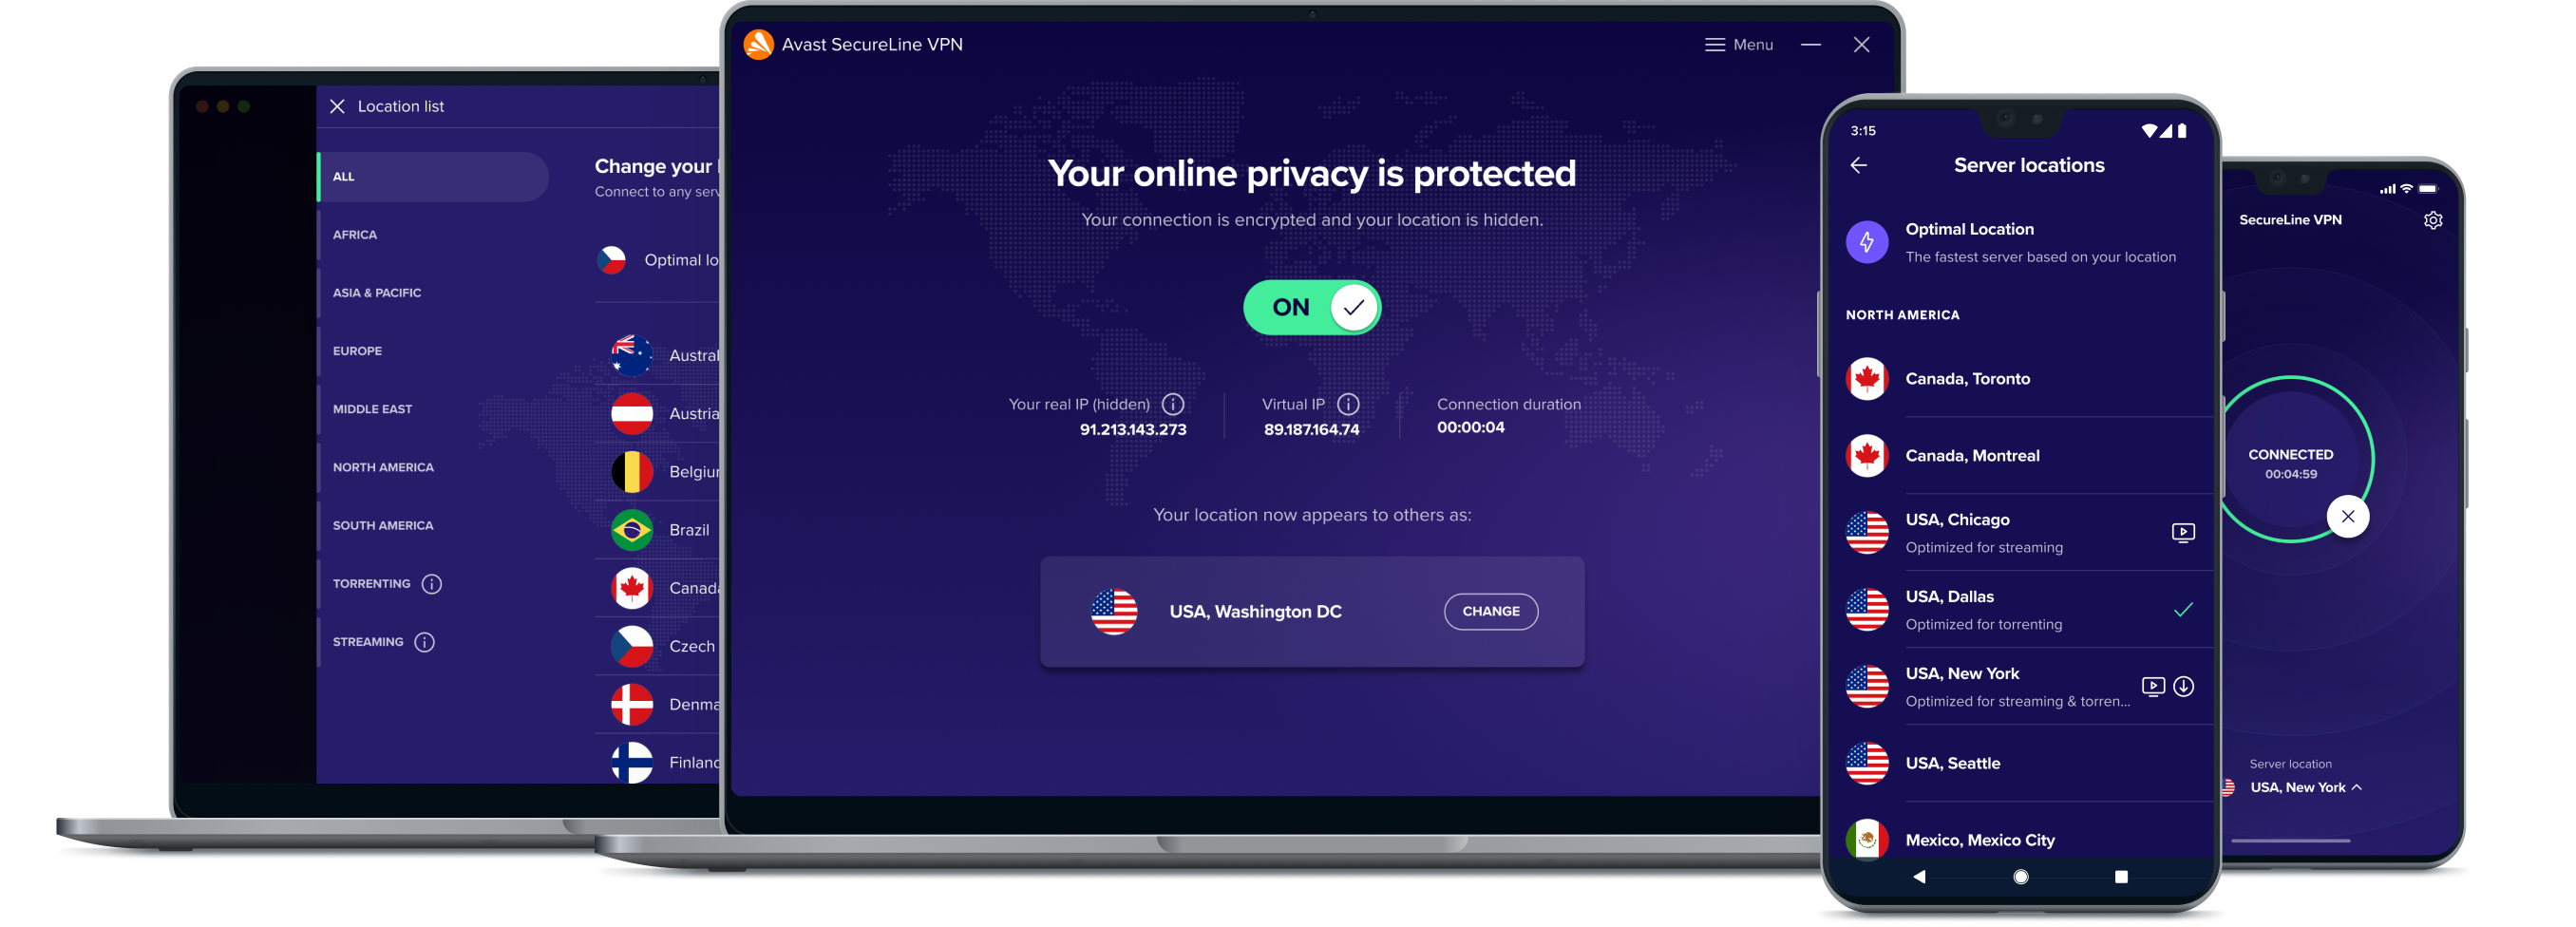 יותר חופש באינטרנט עם שירות ה-VPN שלנו